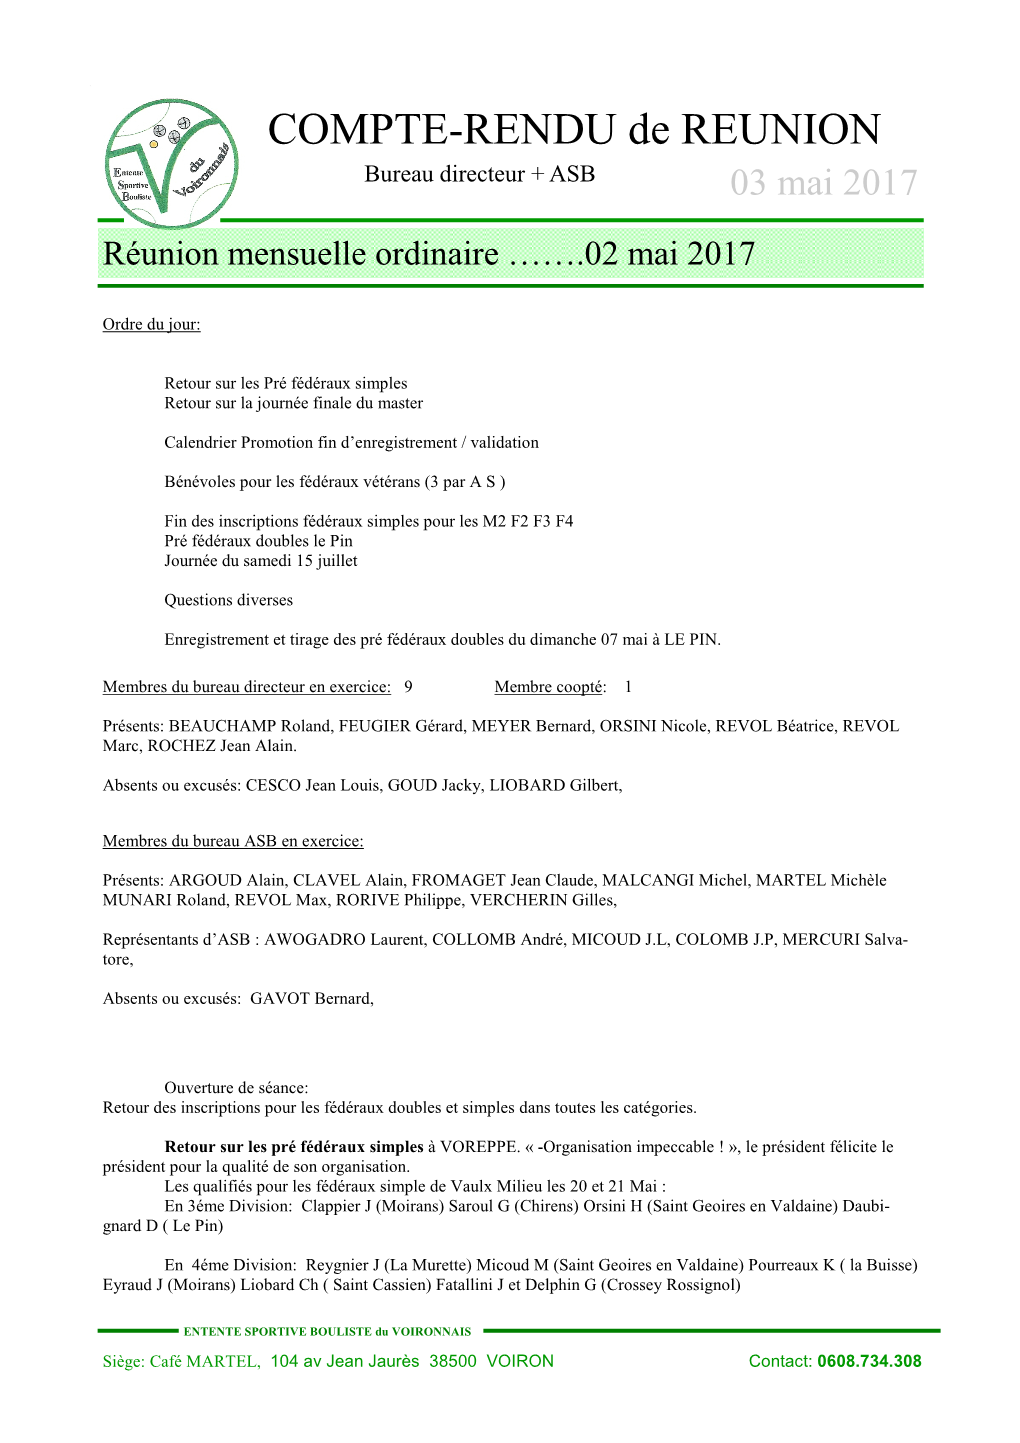 COMPTE-RENDU De REUNION Bureau Directeur + ASB 03 Mai 2017